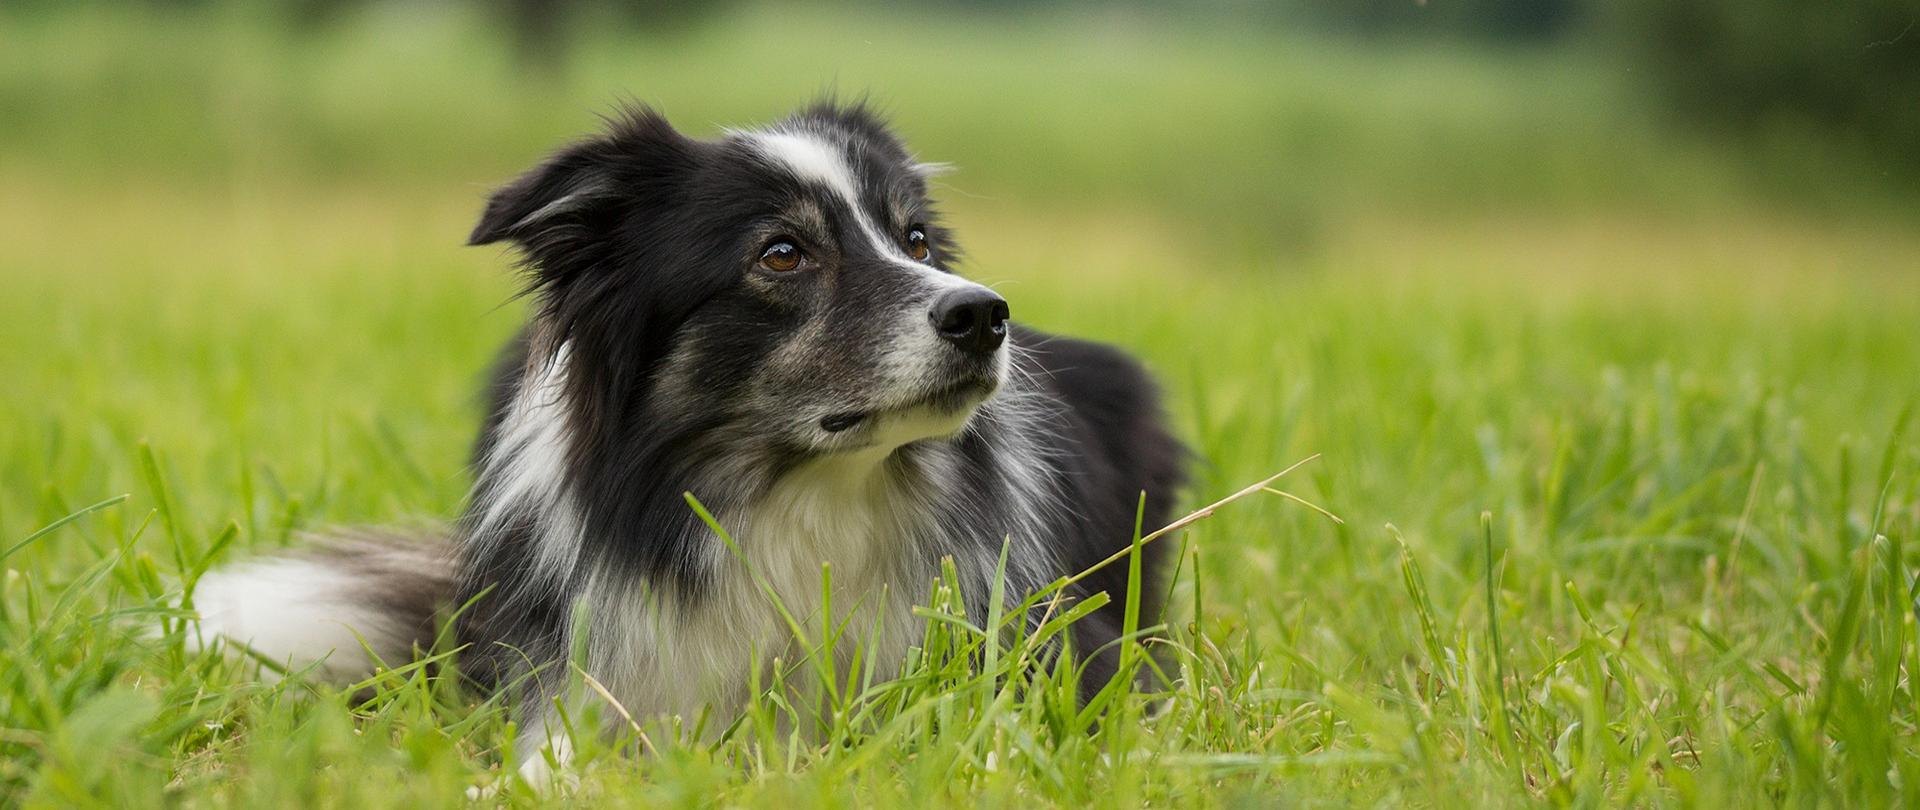 Pies rasy border collie leżący na trawie i spoglądający poza kard zdjęcia